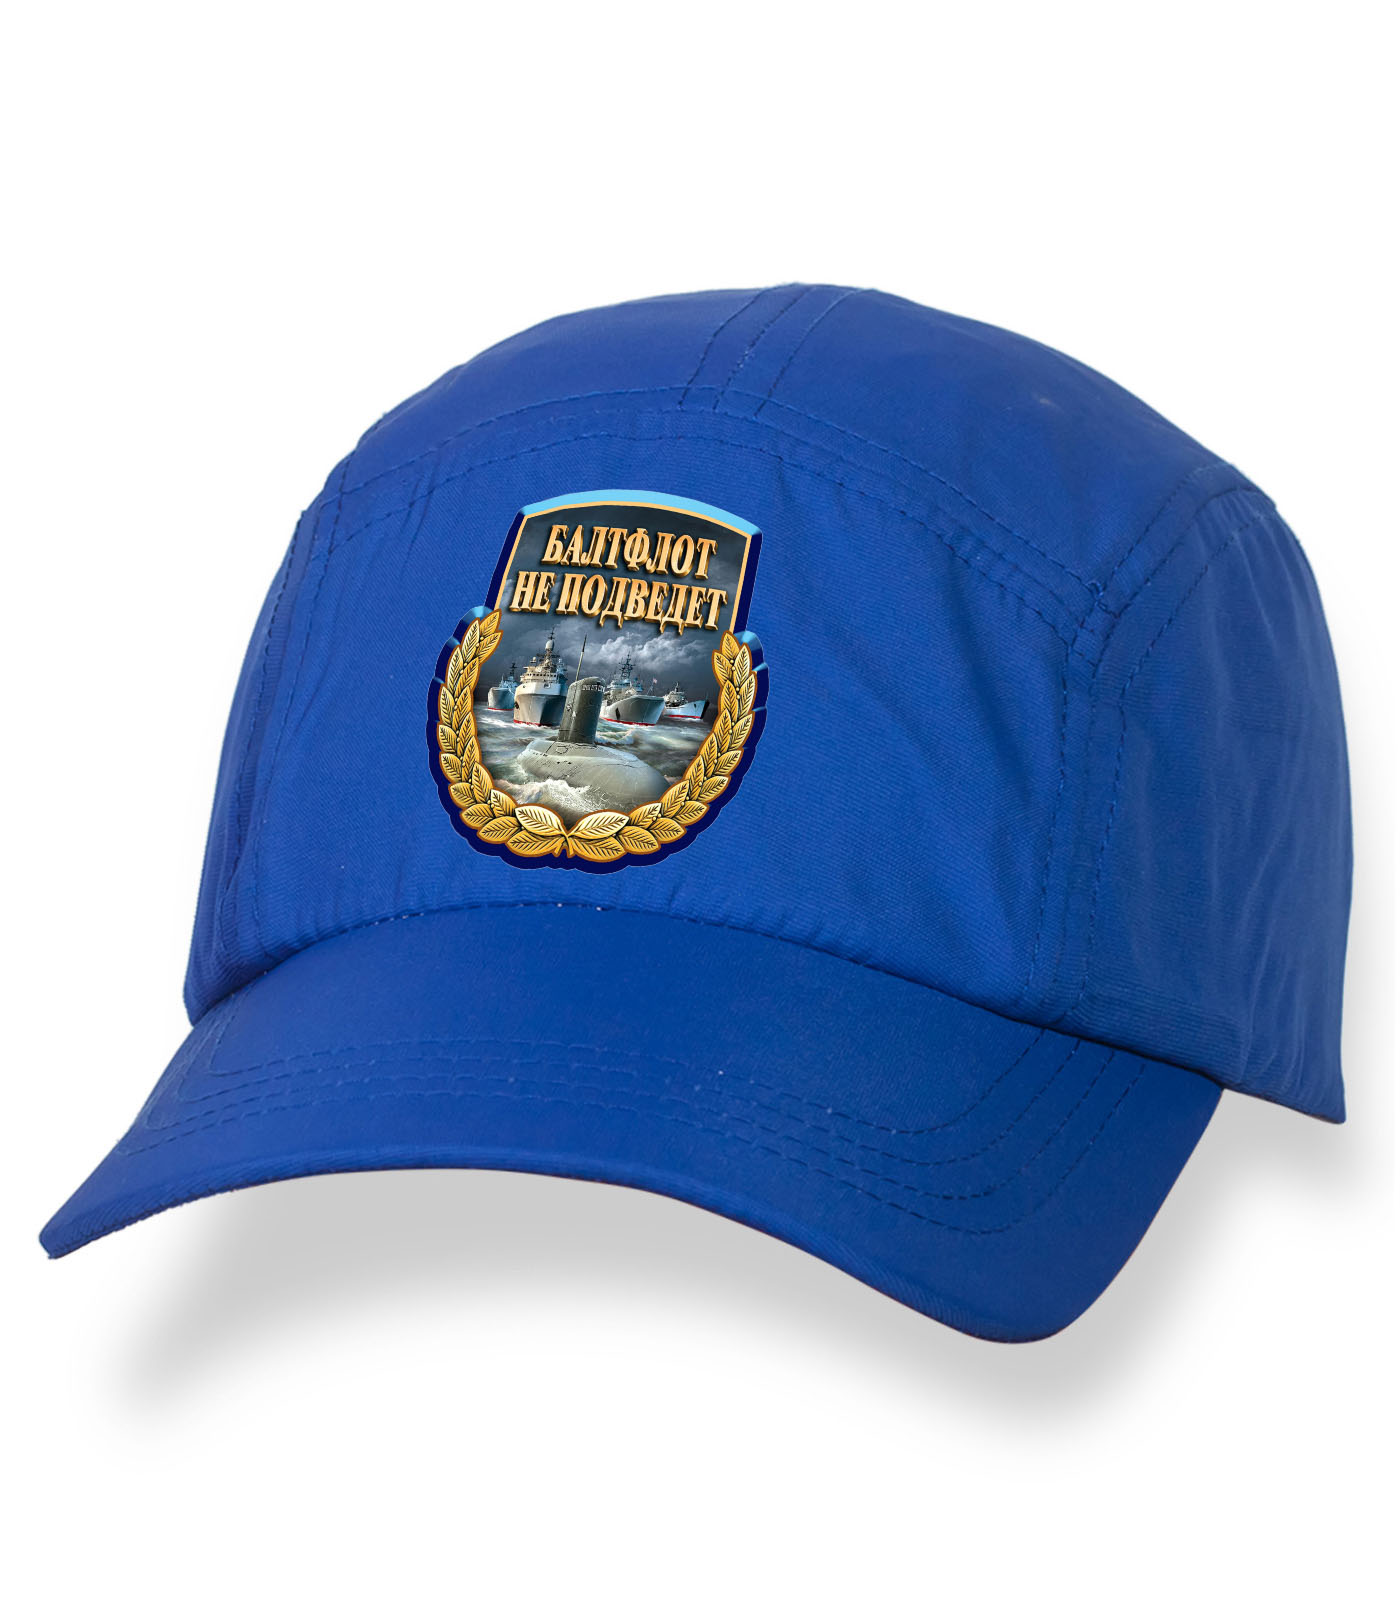 Отличная синяя кепка-пятипанелька с термонаклейкой БФ РФ  - Балт Флот не подведет! Отличный головной убор премиум-класса по выгодной цене!